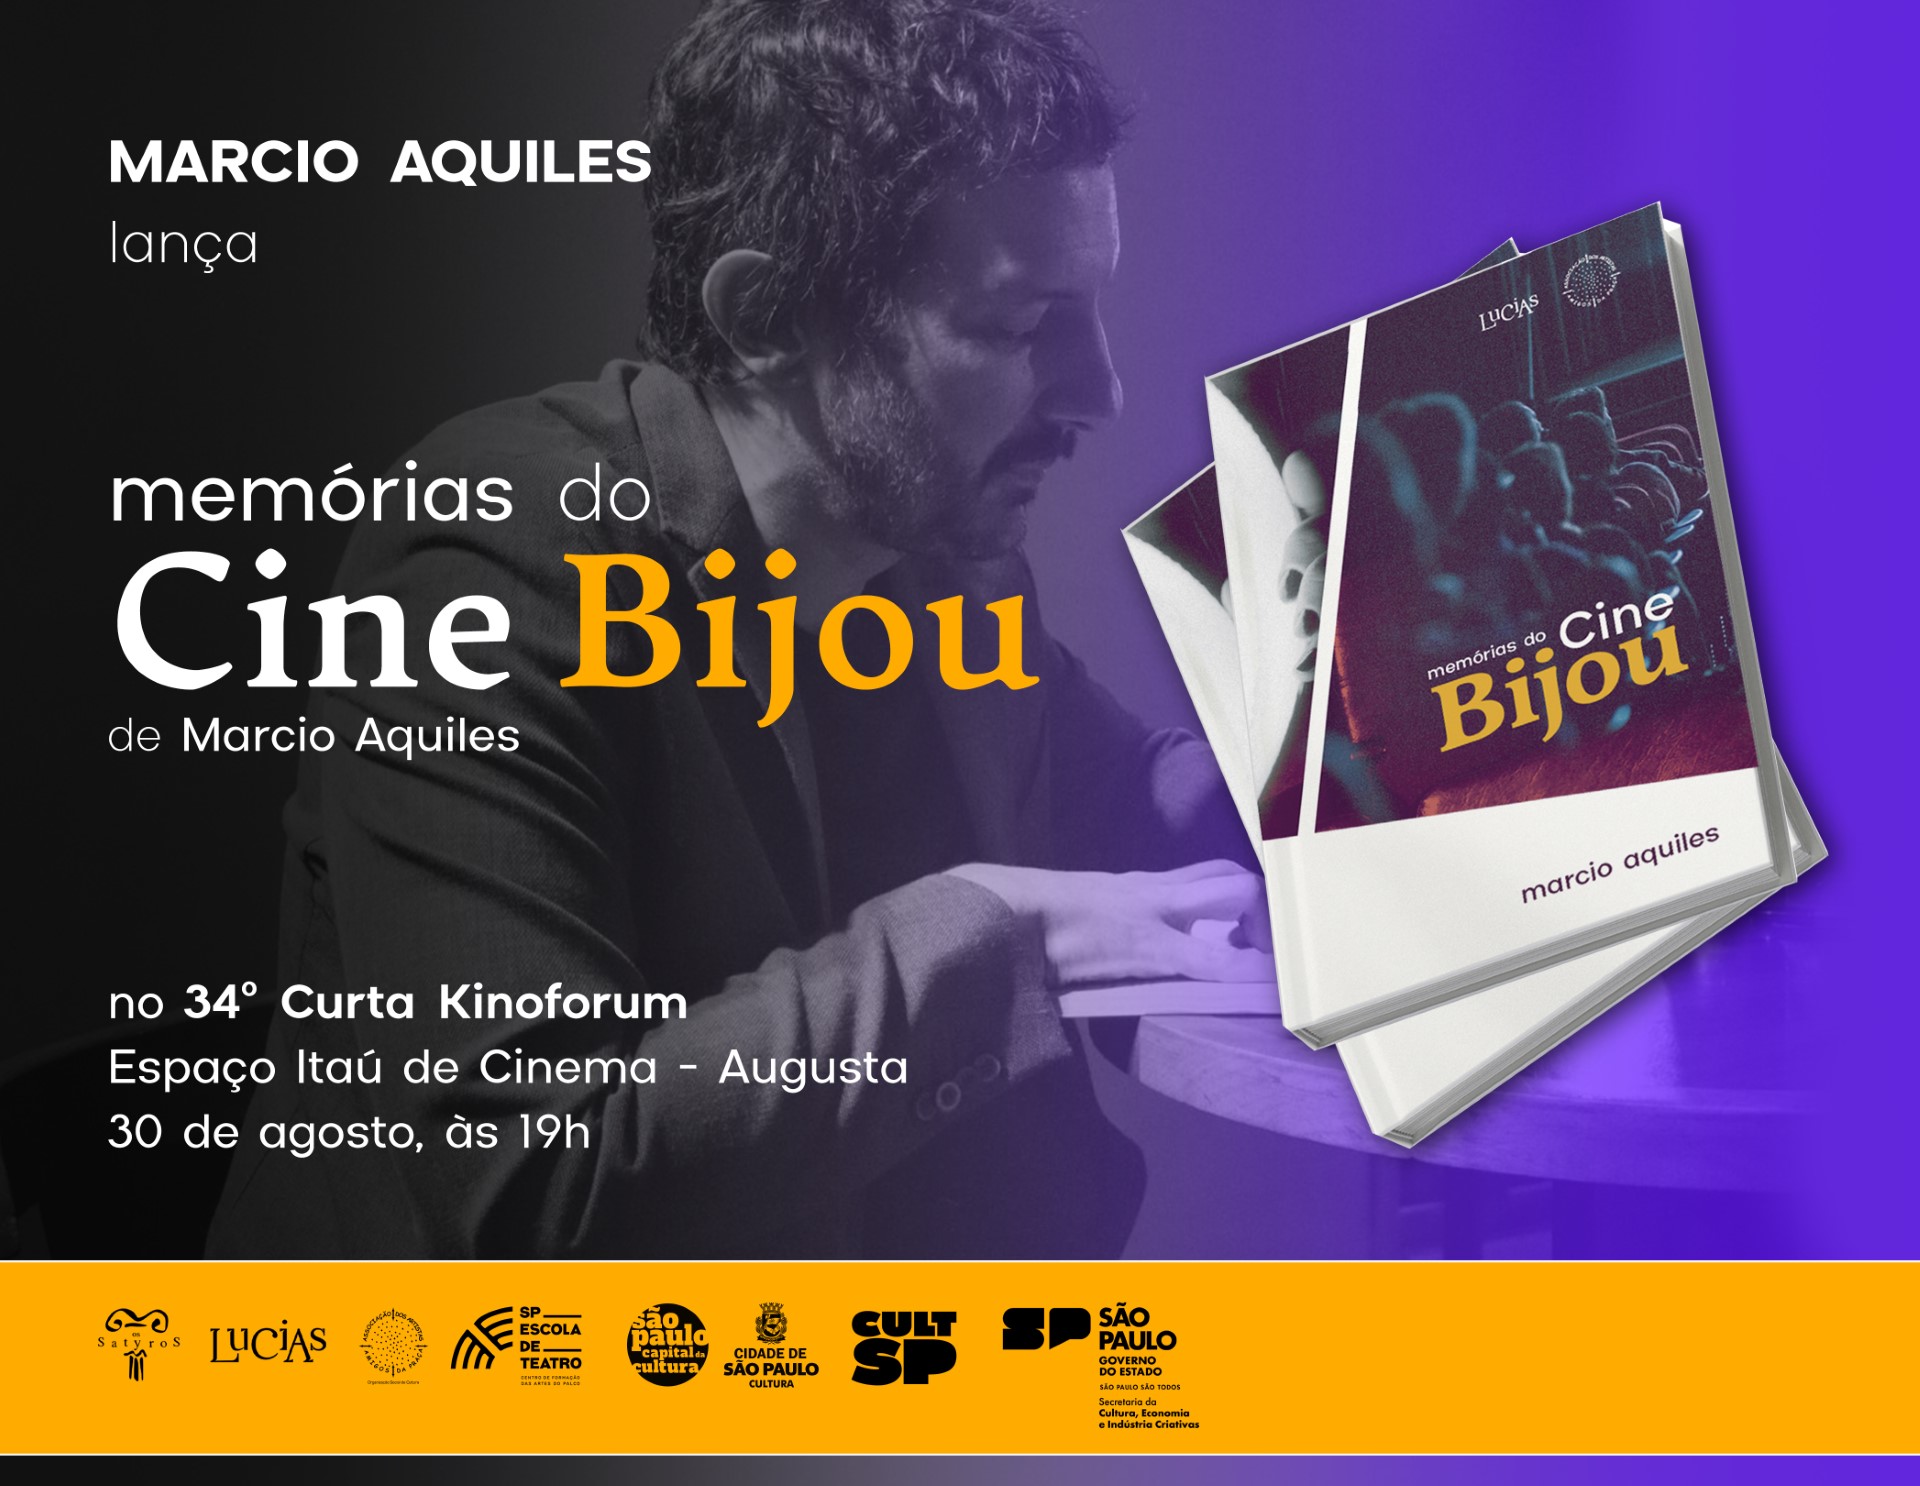 Novo lançamento de "Memórias do Cine Bijou", livro de Marcio Aquiles, lançado pelo Selo Lucias.